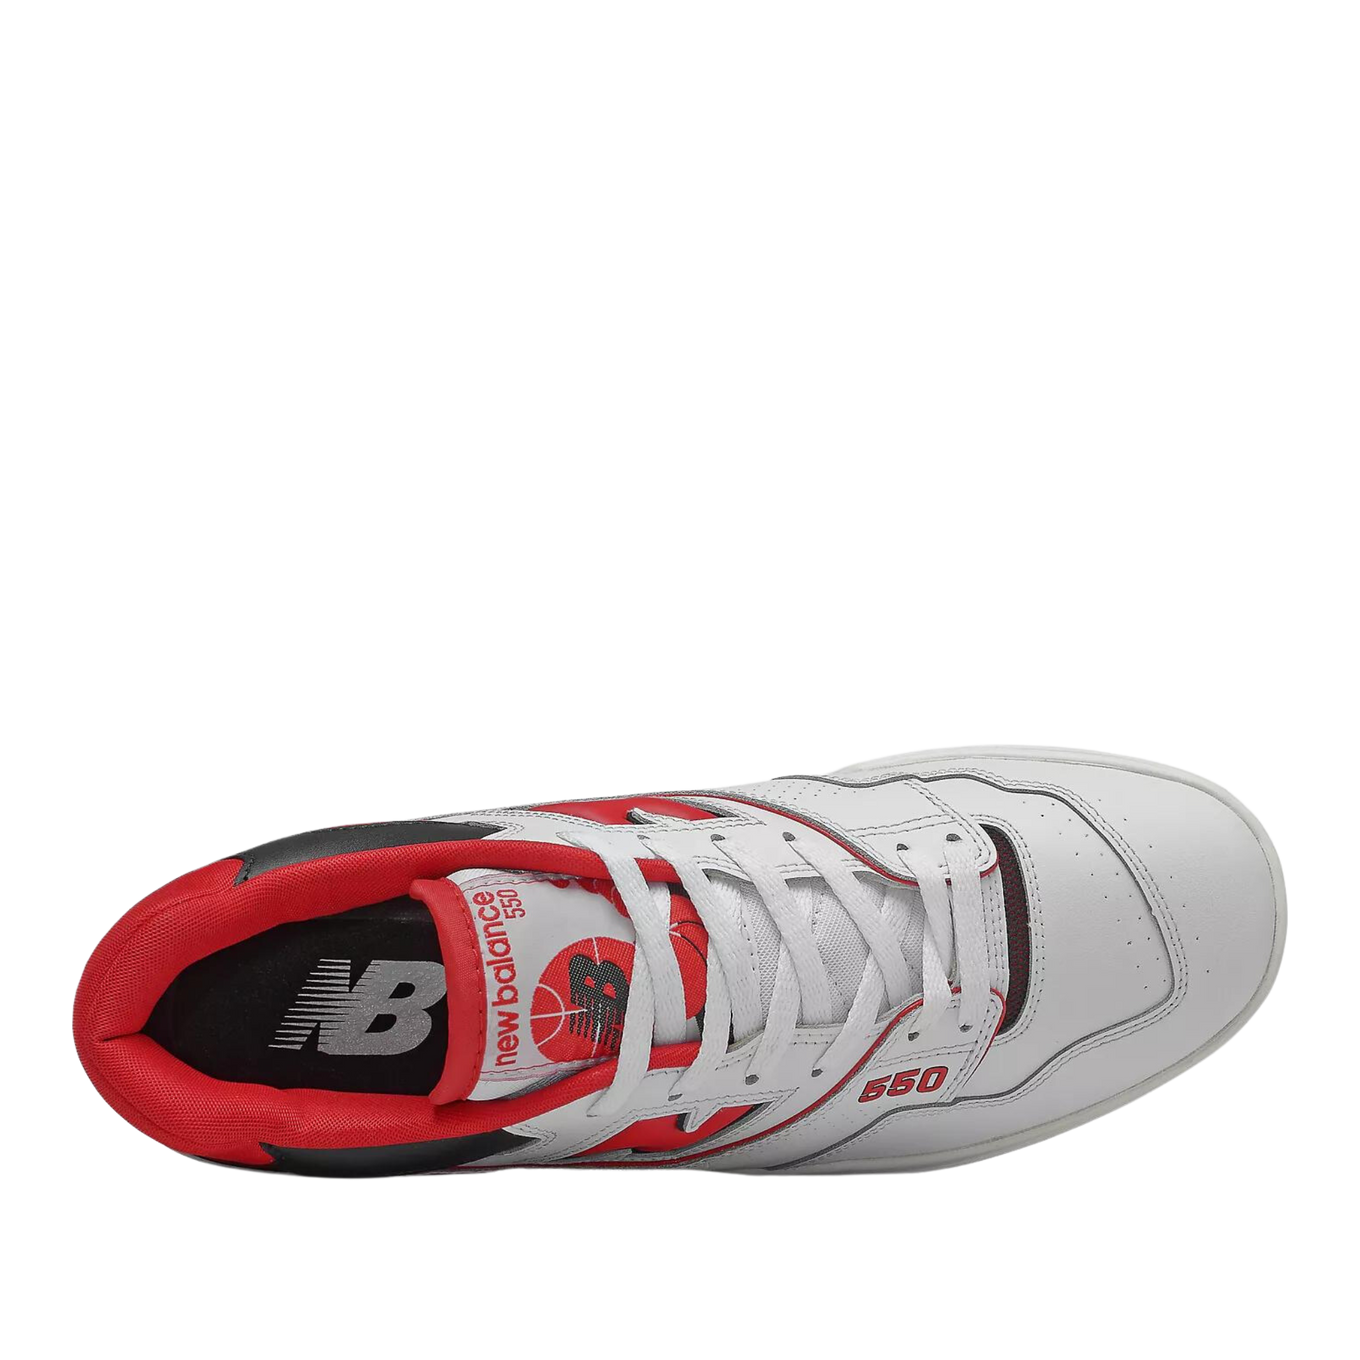 New Balance 550 (White/Red) 11.5